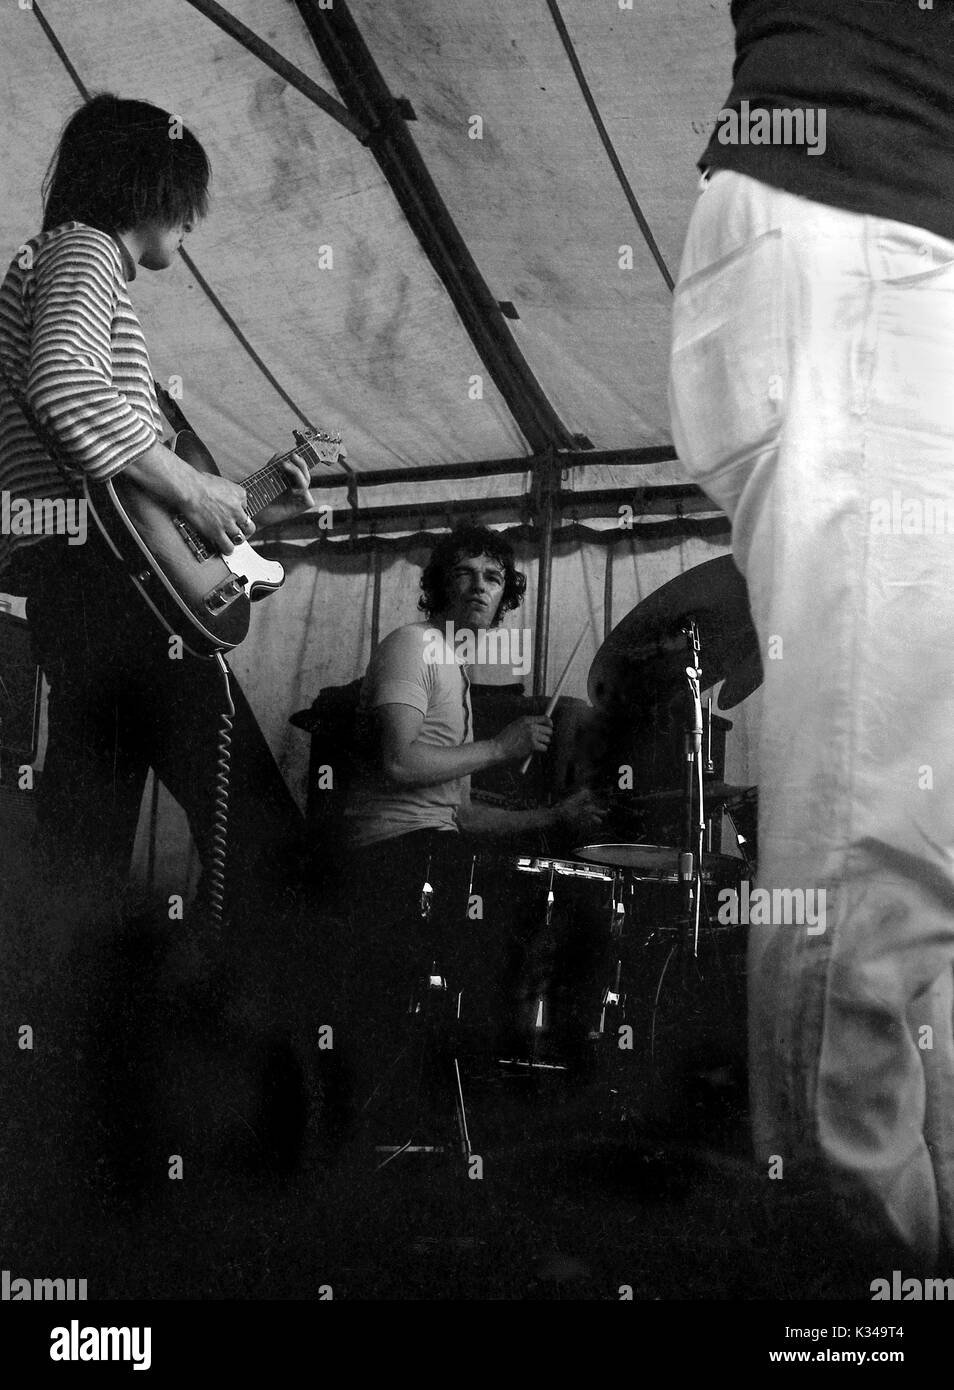 Samen von Glastonbury: Die Poesie Rock Band der Liverpooler Szene in der Badewanne Festival des Blues 1969 durchführen, in der Stadt Erholung am Samstag, den 28. Juni statt. Im folgenden Jahr Veranstalter Freddy Bannister erweitert die Veranstaltung über ein Wochenende laufen, Verschieben in die Badewanne und West Showground in Shepton Mallet und umbenennen. Badewanne Festival des Blues und progressiver Musik. Das Festival inspiriert Michael Eavis ein Festival von seinen Selbst bei Glastonbury zu einem späteren Zeitpunkt in 1970 starten. Stockfoto